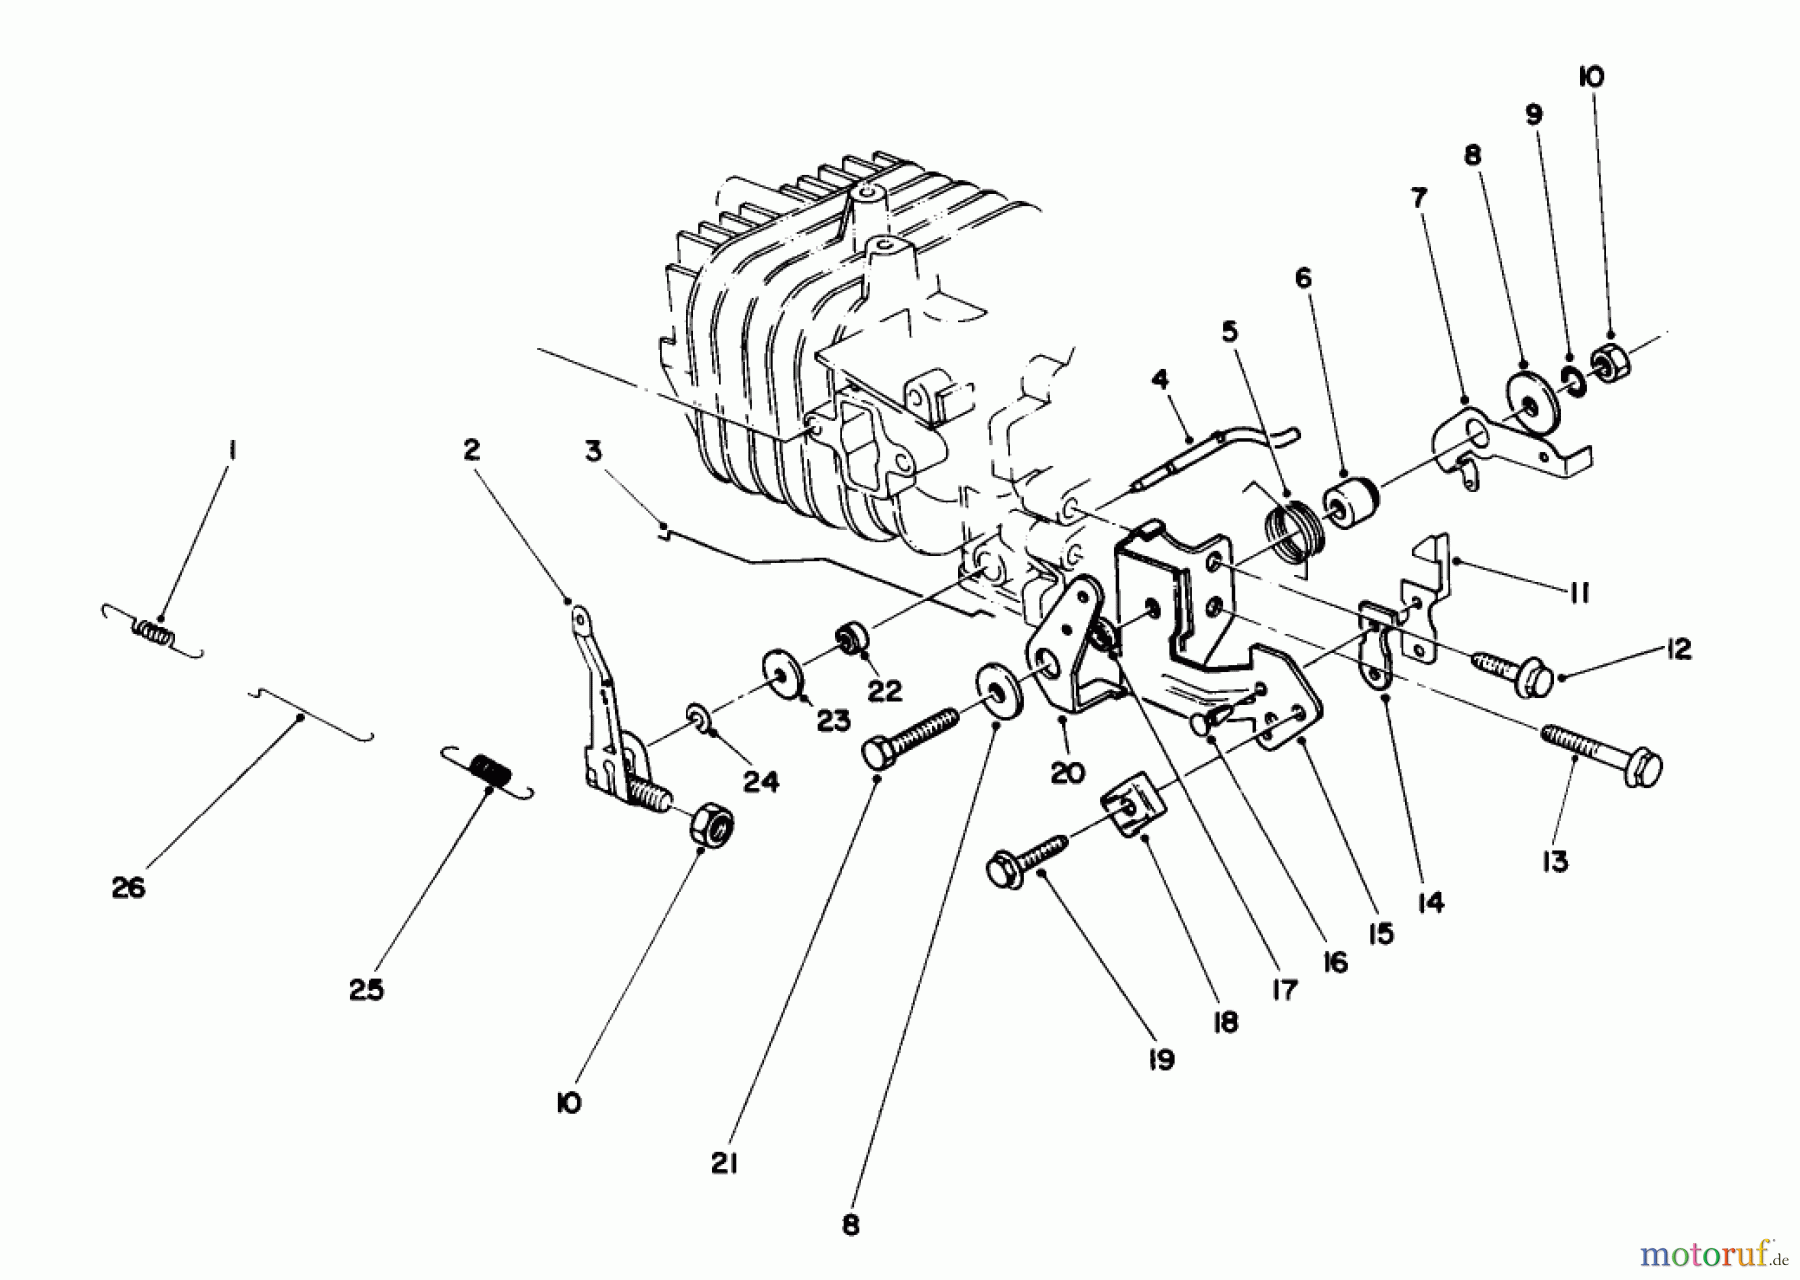  Toro Neu Mowers, Walk-Behind Seite 2 22025C - Toro Lawnmower, 1988 (8000001-8999999) ENGINE ASSEMBLY MODEL NO. 47PH7 #4